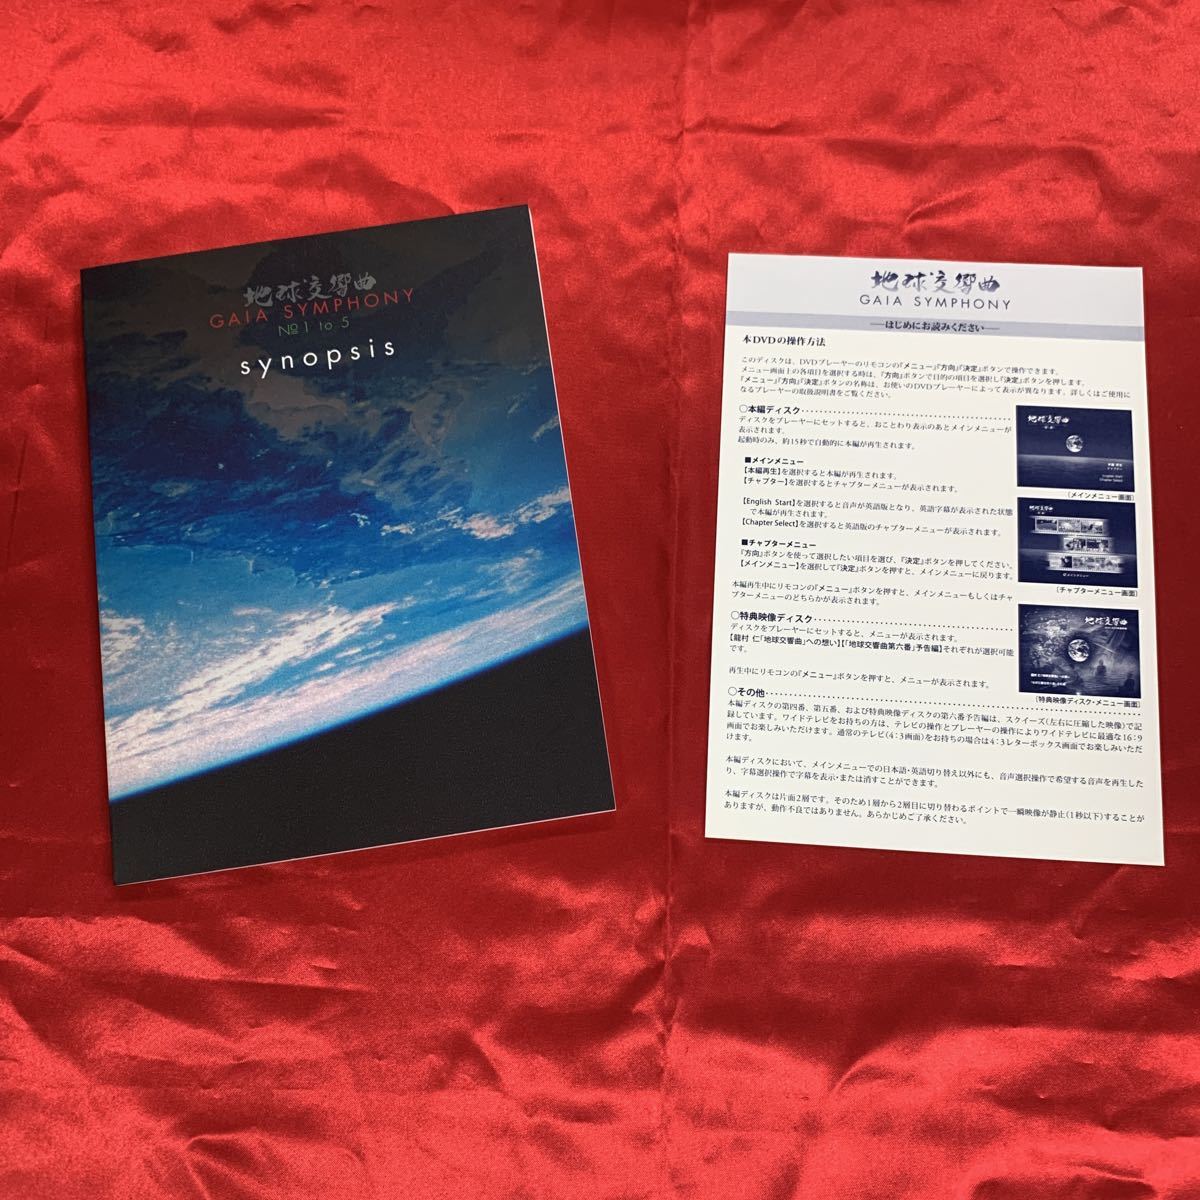 地球交響曲 ガイアシンフォニー DVD-BOX スペシャルパッケージ版 6枚組-